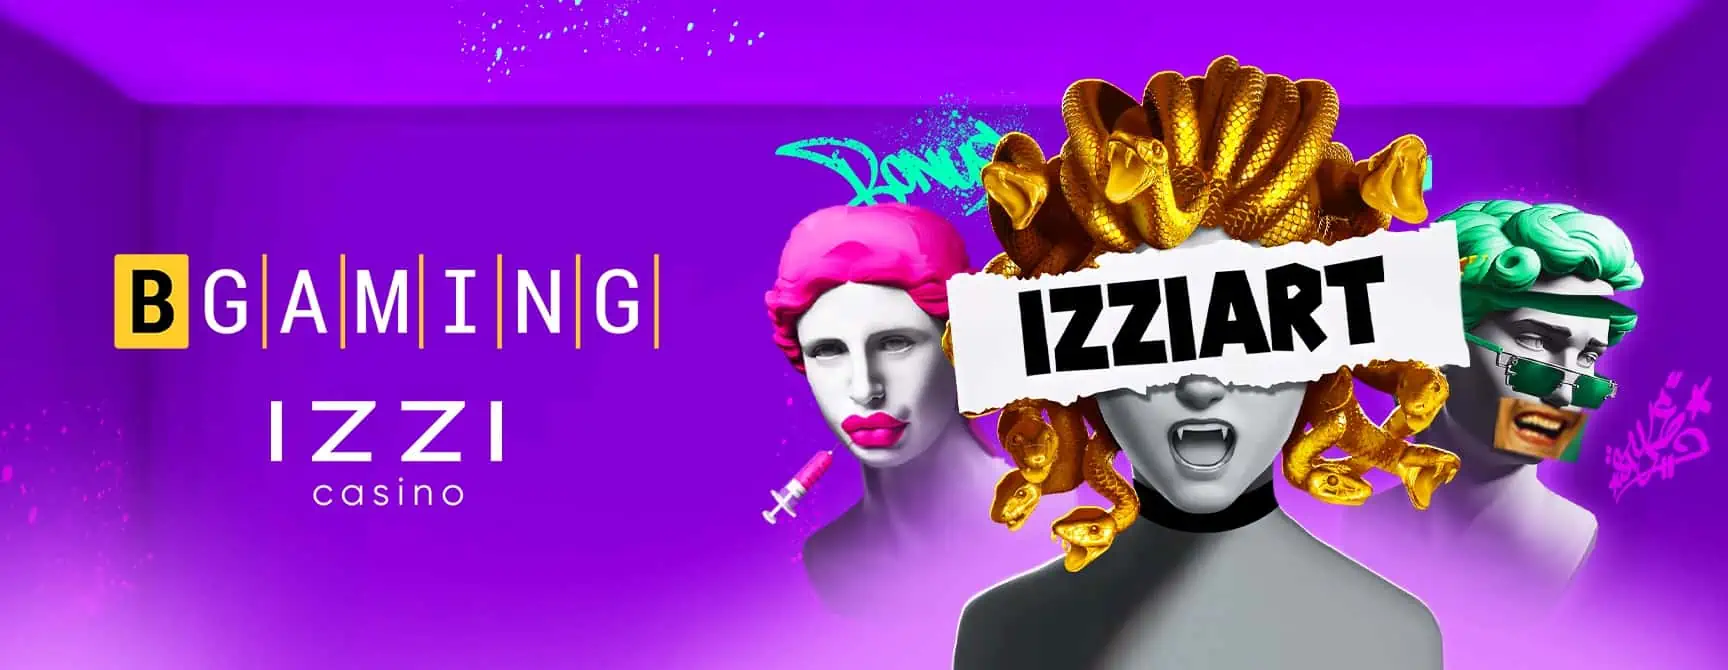 BGaming & IZZI Casino: Launch of Izzi Art Slot Image